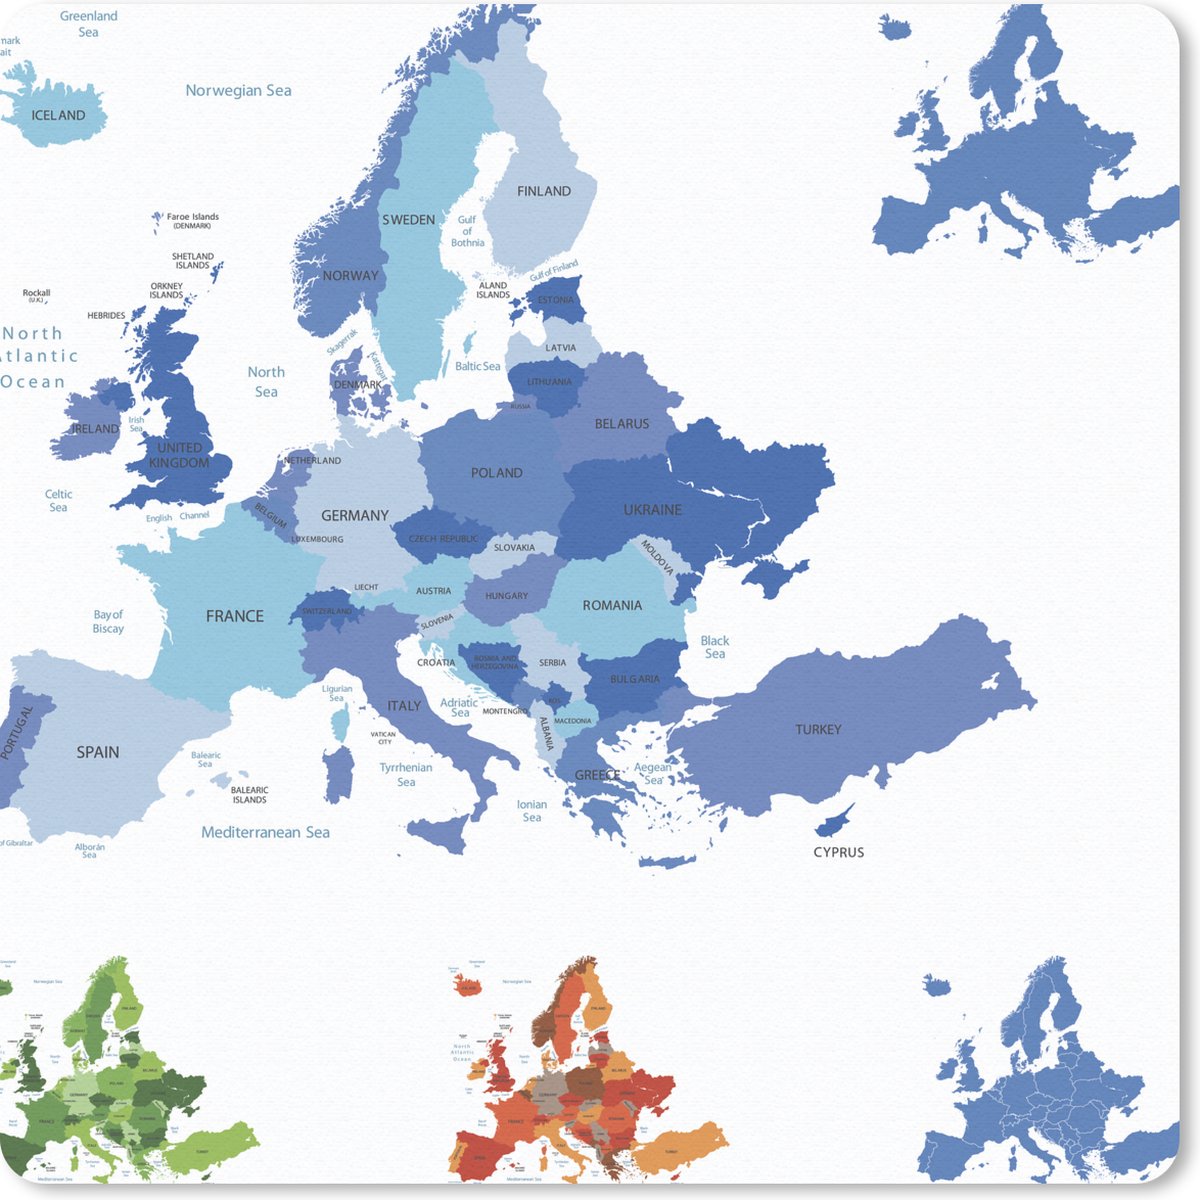 Muismat - Mousepad - Kaart - Europa - Blauw - 30x30 cm - Muismatten